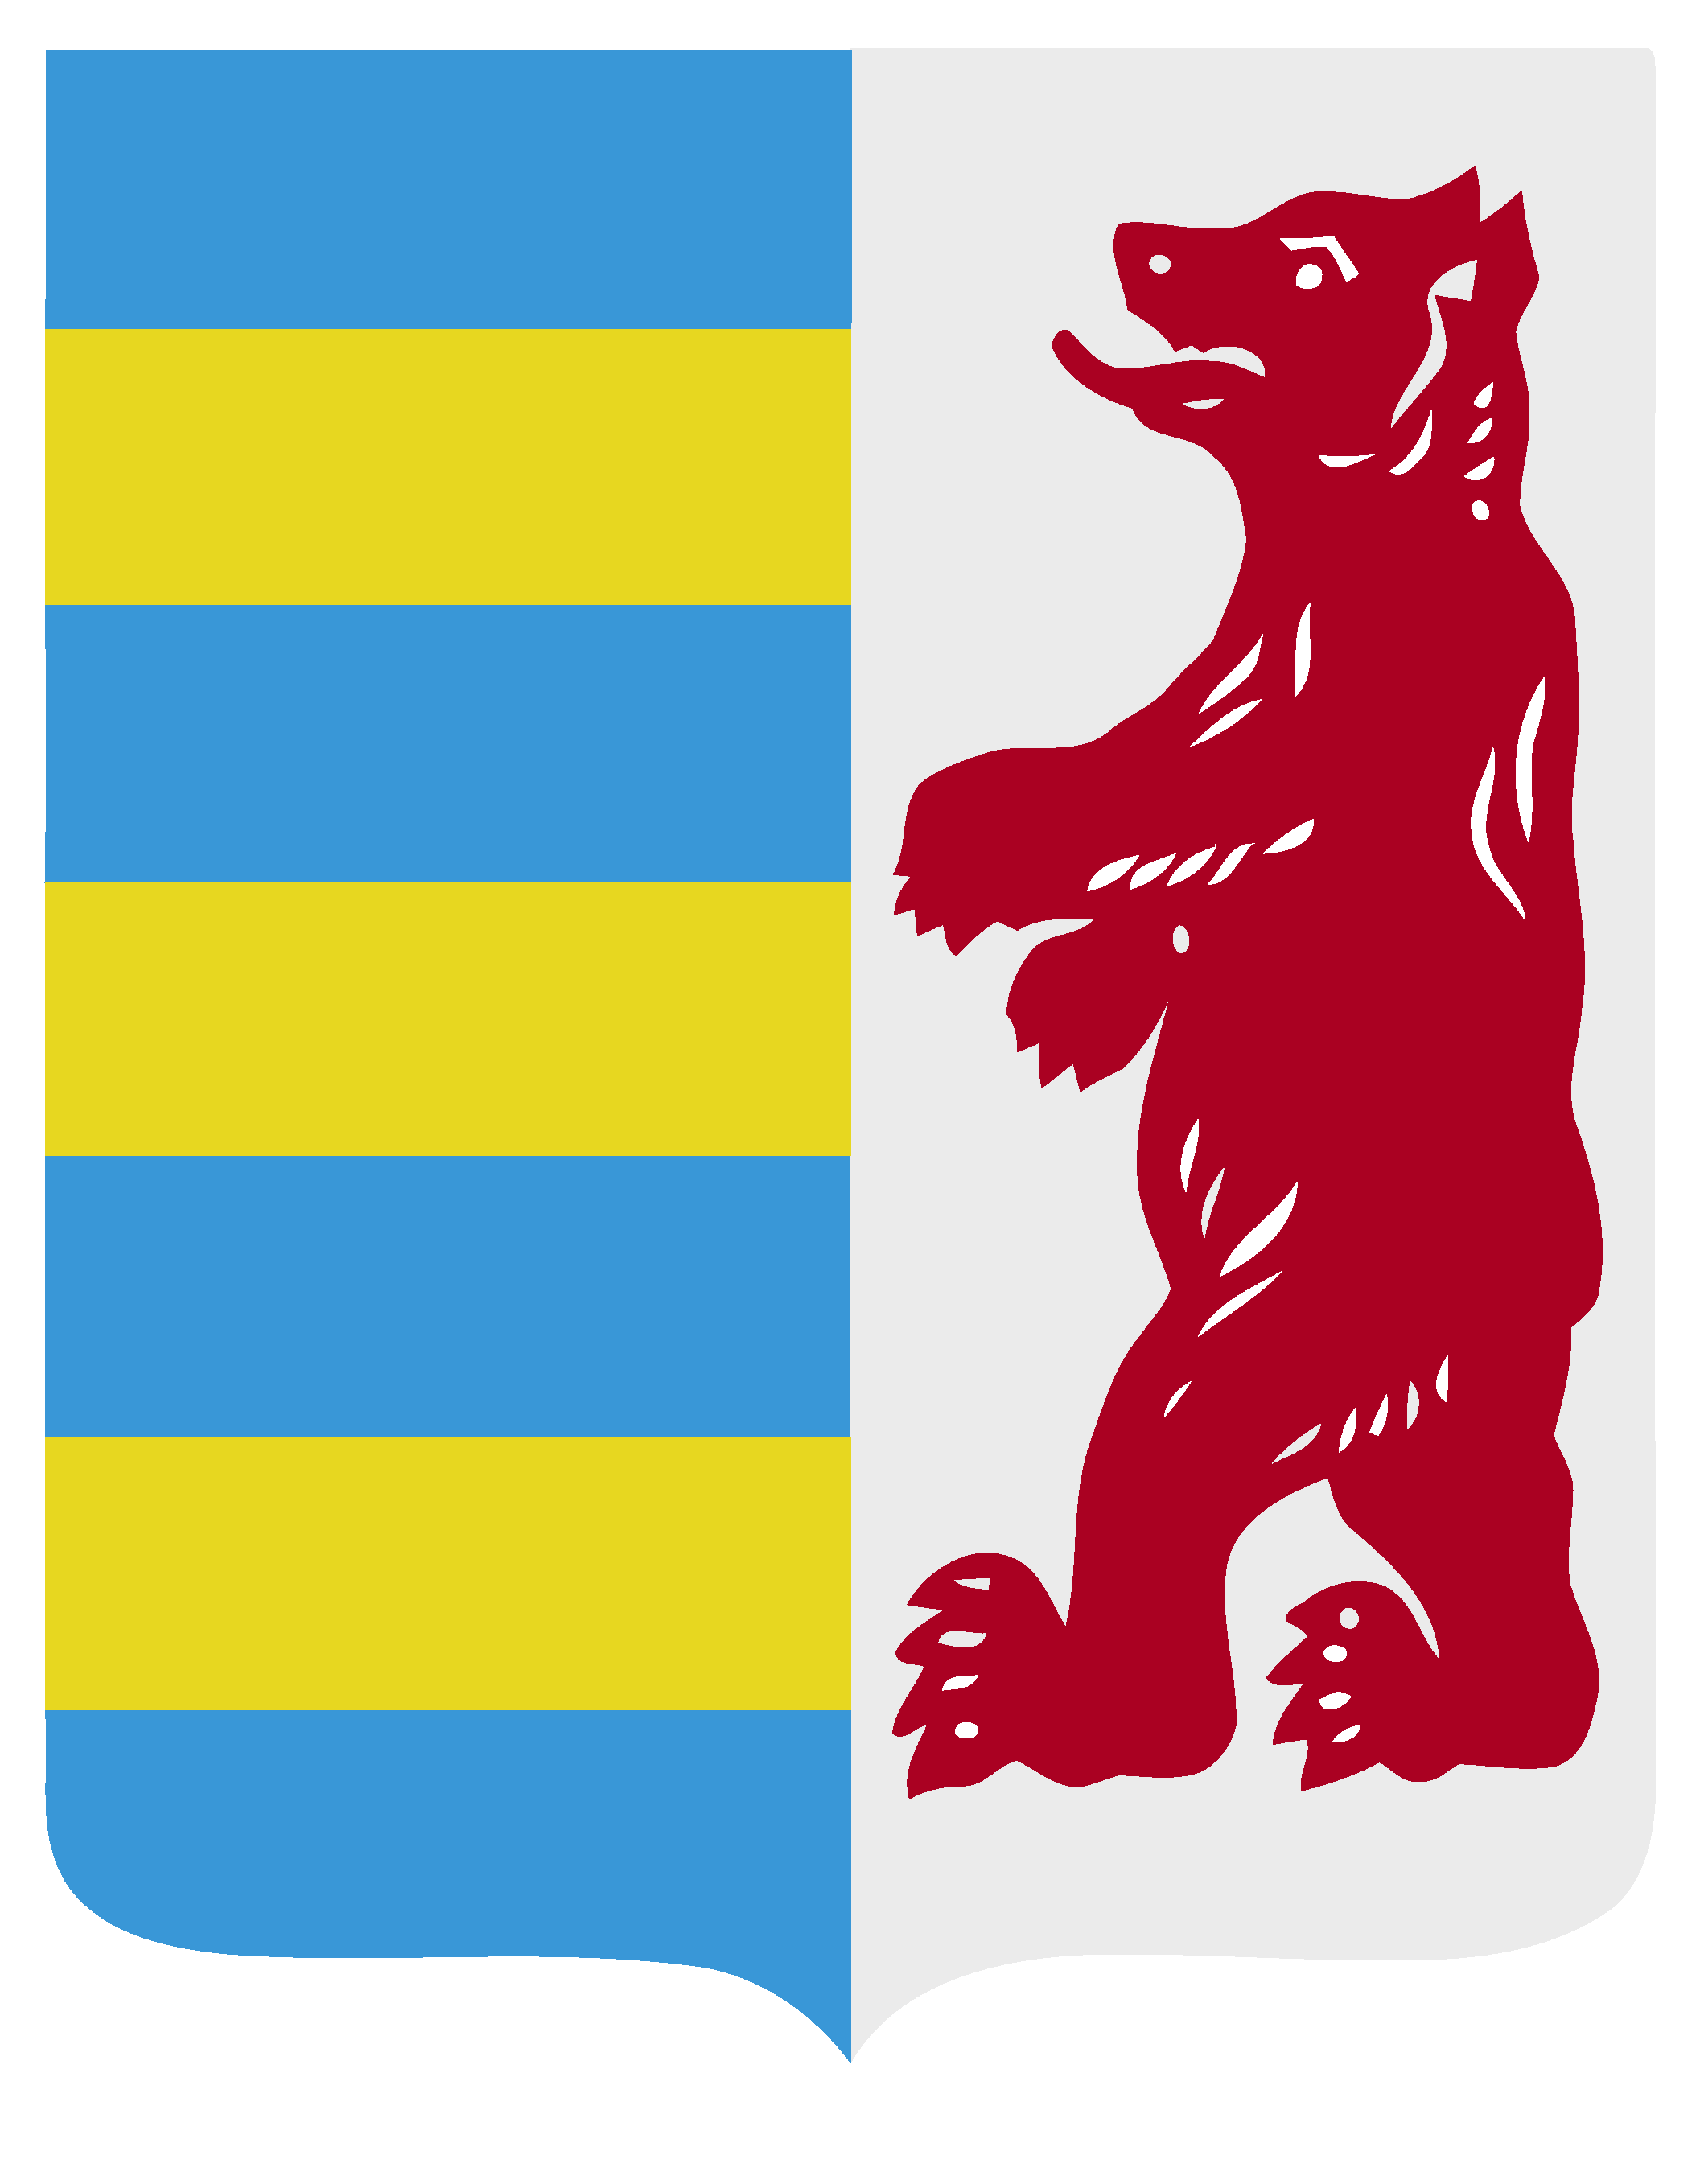 Rusyn coat of arms